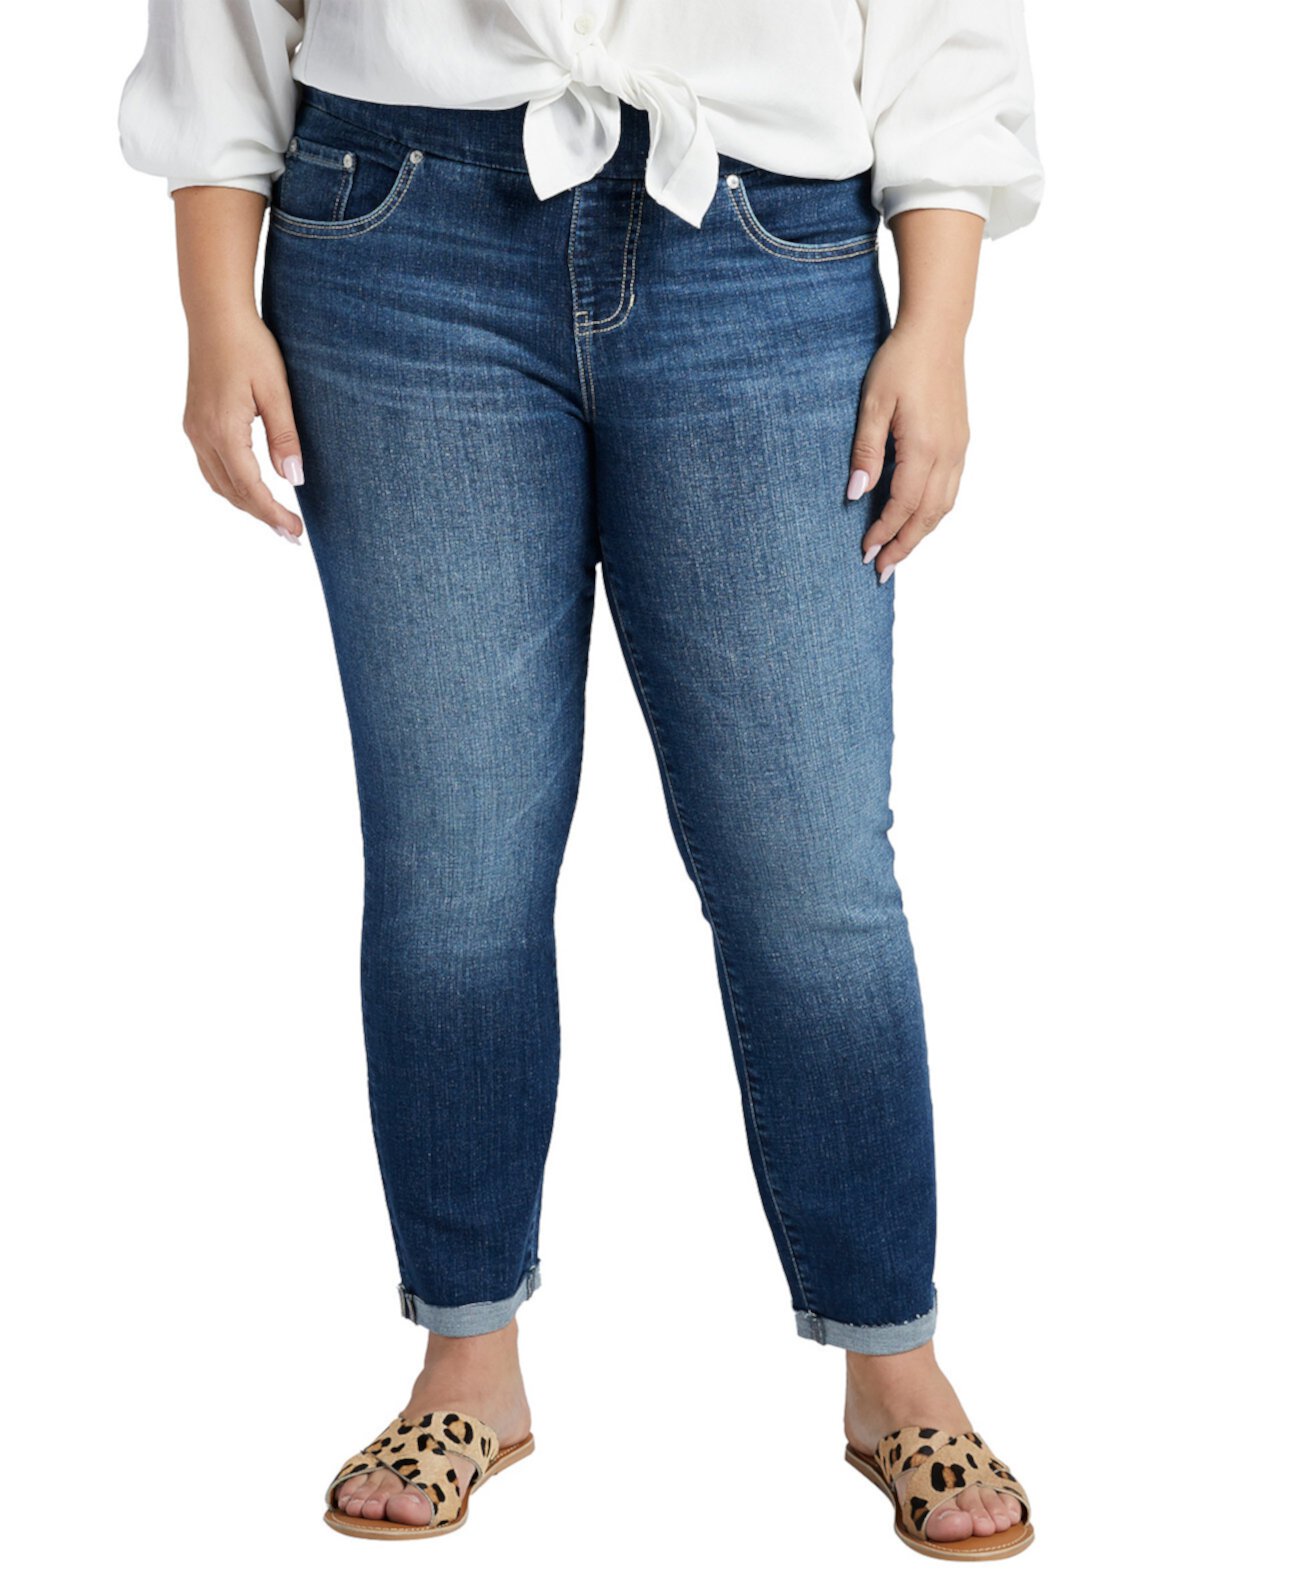 Узкие джинсы без застежки до щиколотки со средней посадкой Amelia размера плюс JAG